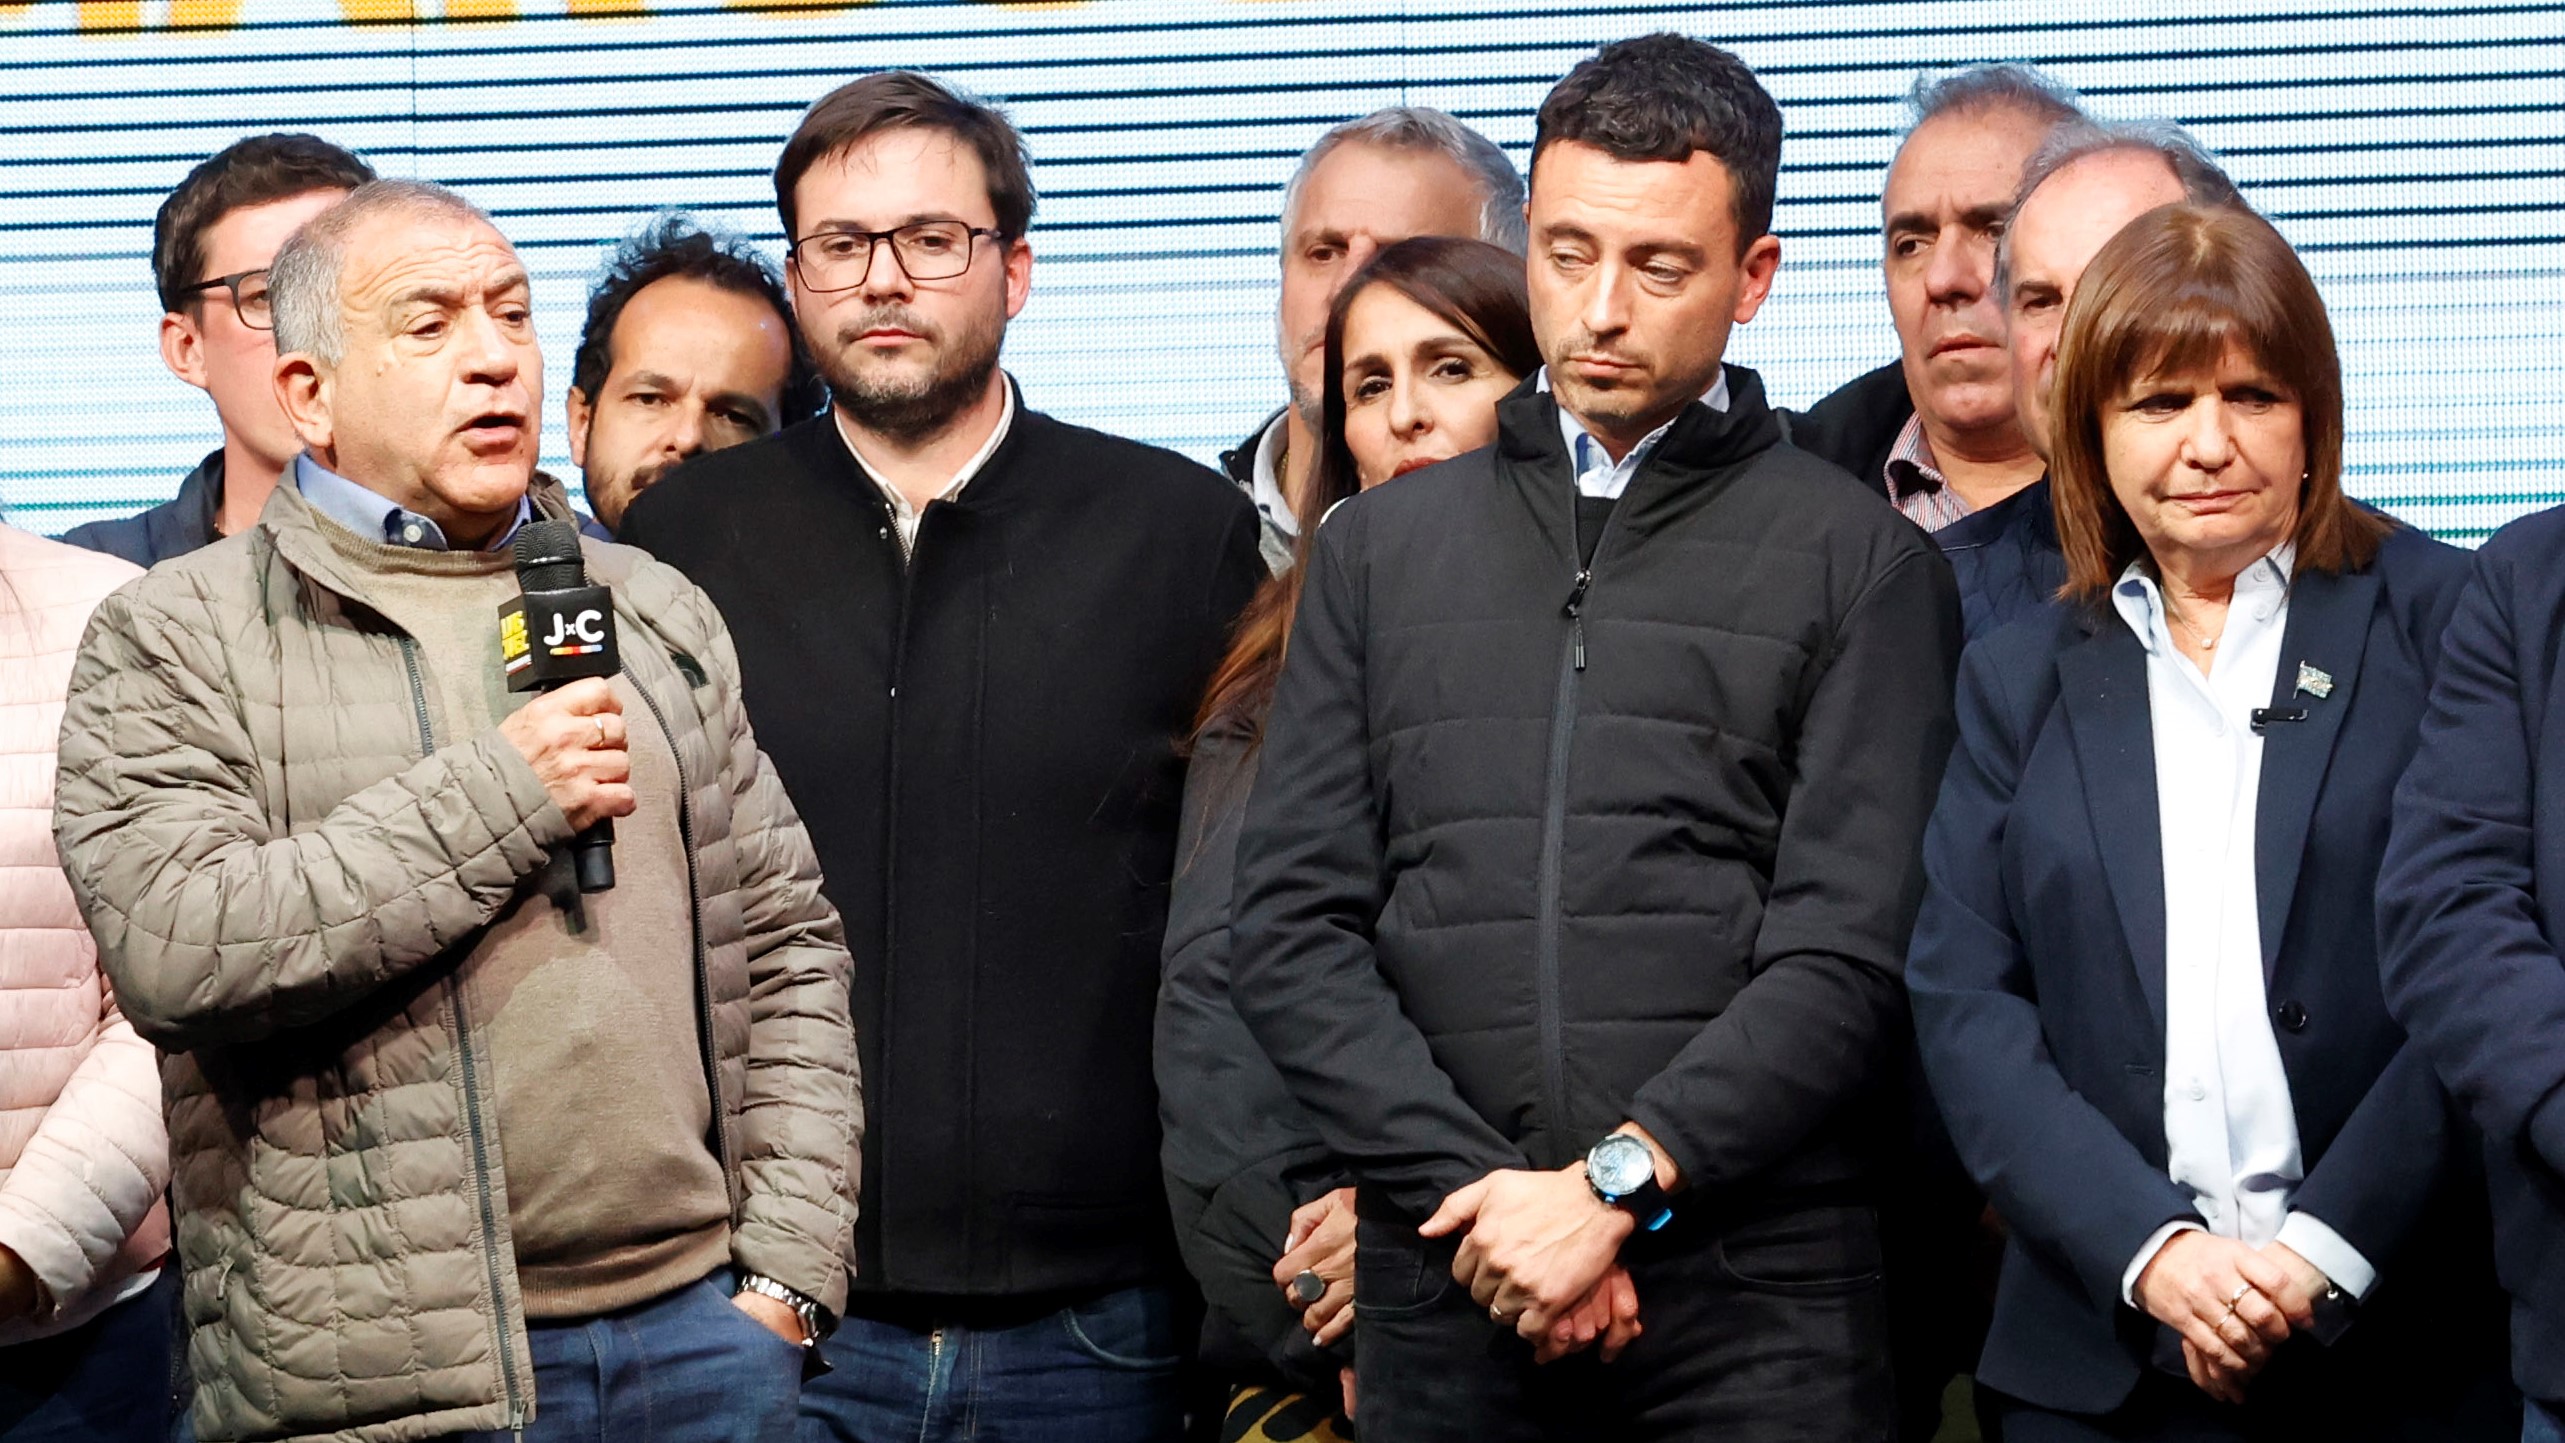 Luis Juez, candidato a gobernador de Juntos por el Cambio, expresó su descontento y aún no reconoce la derrota en los comicios provinciales de Córdoba. Foto Télam.